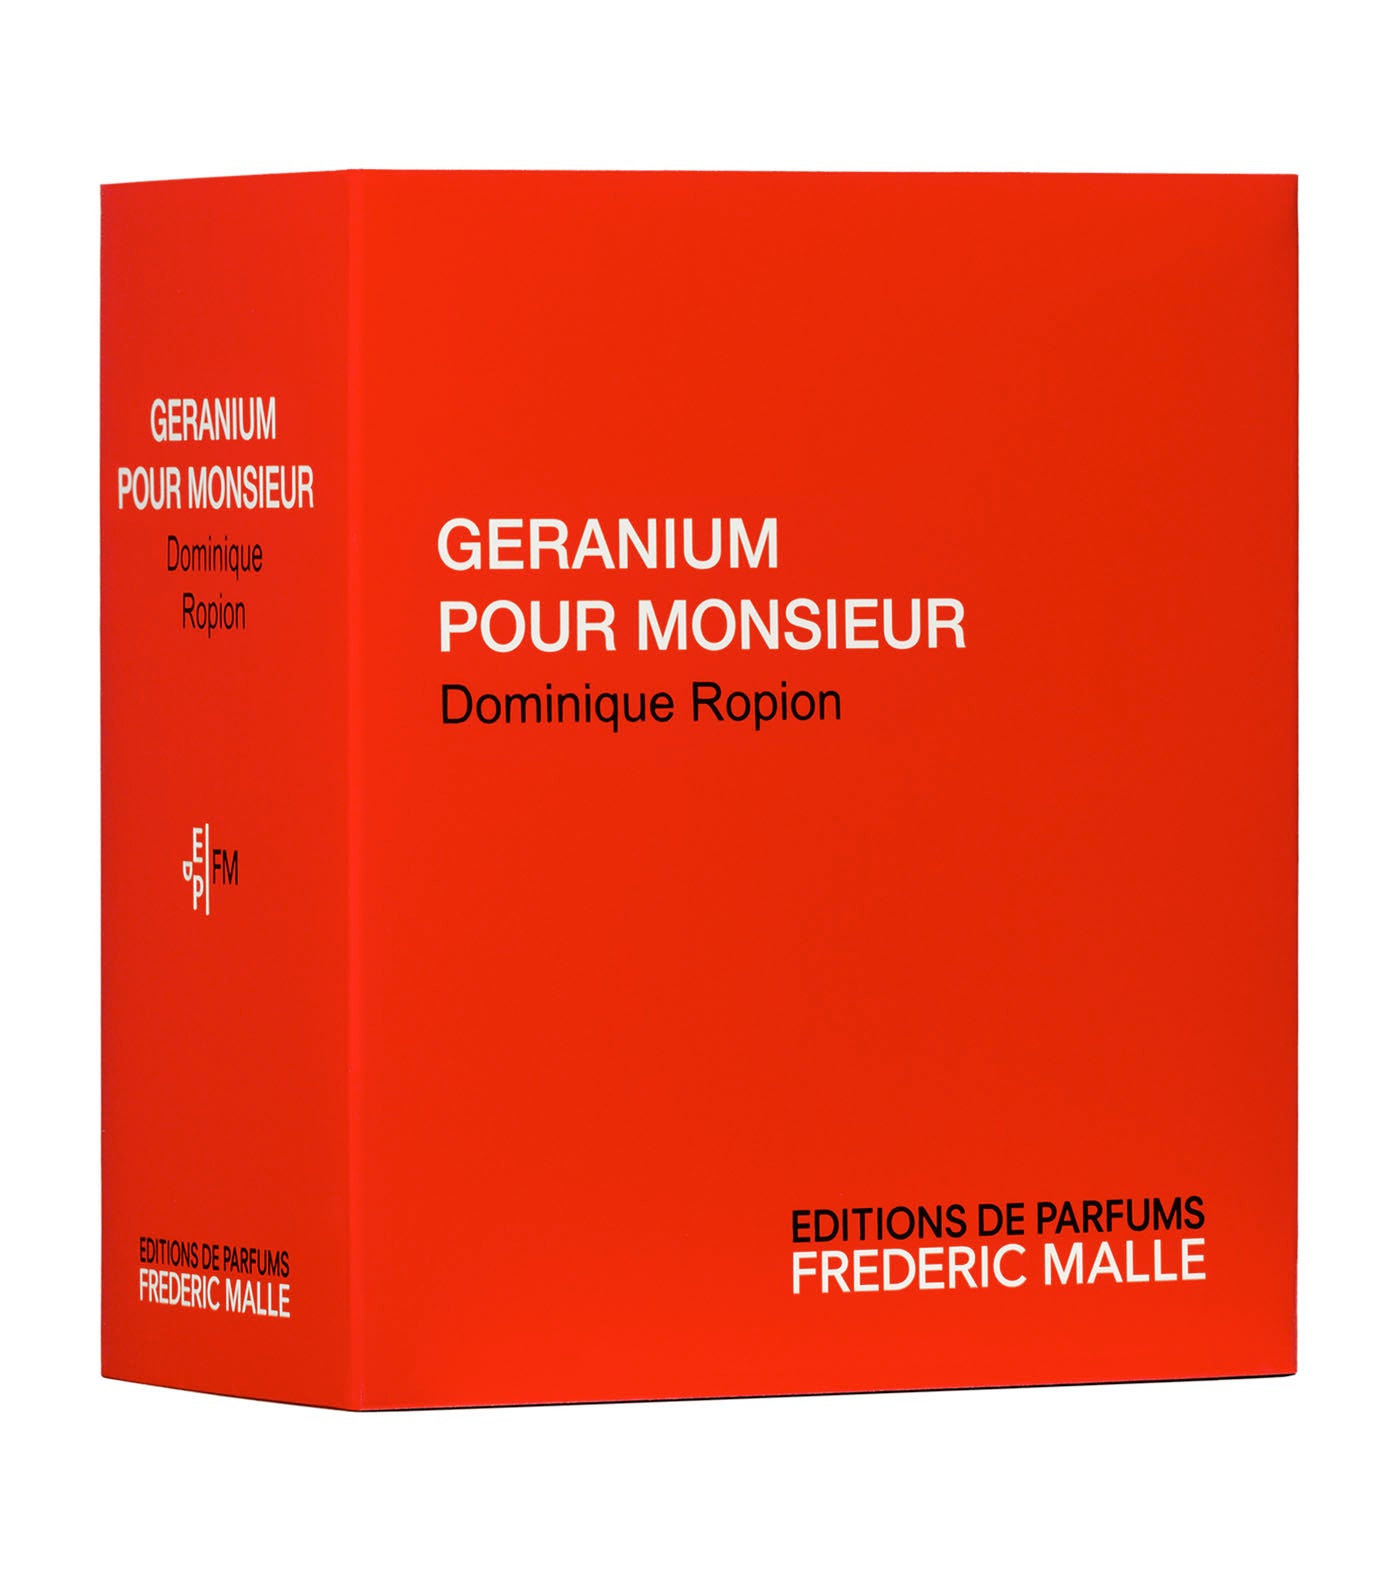 Geranium Pour Monsieur Perfume by Dominique Ropion